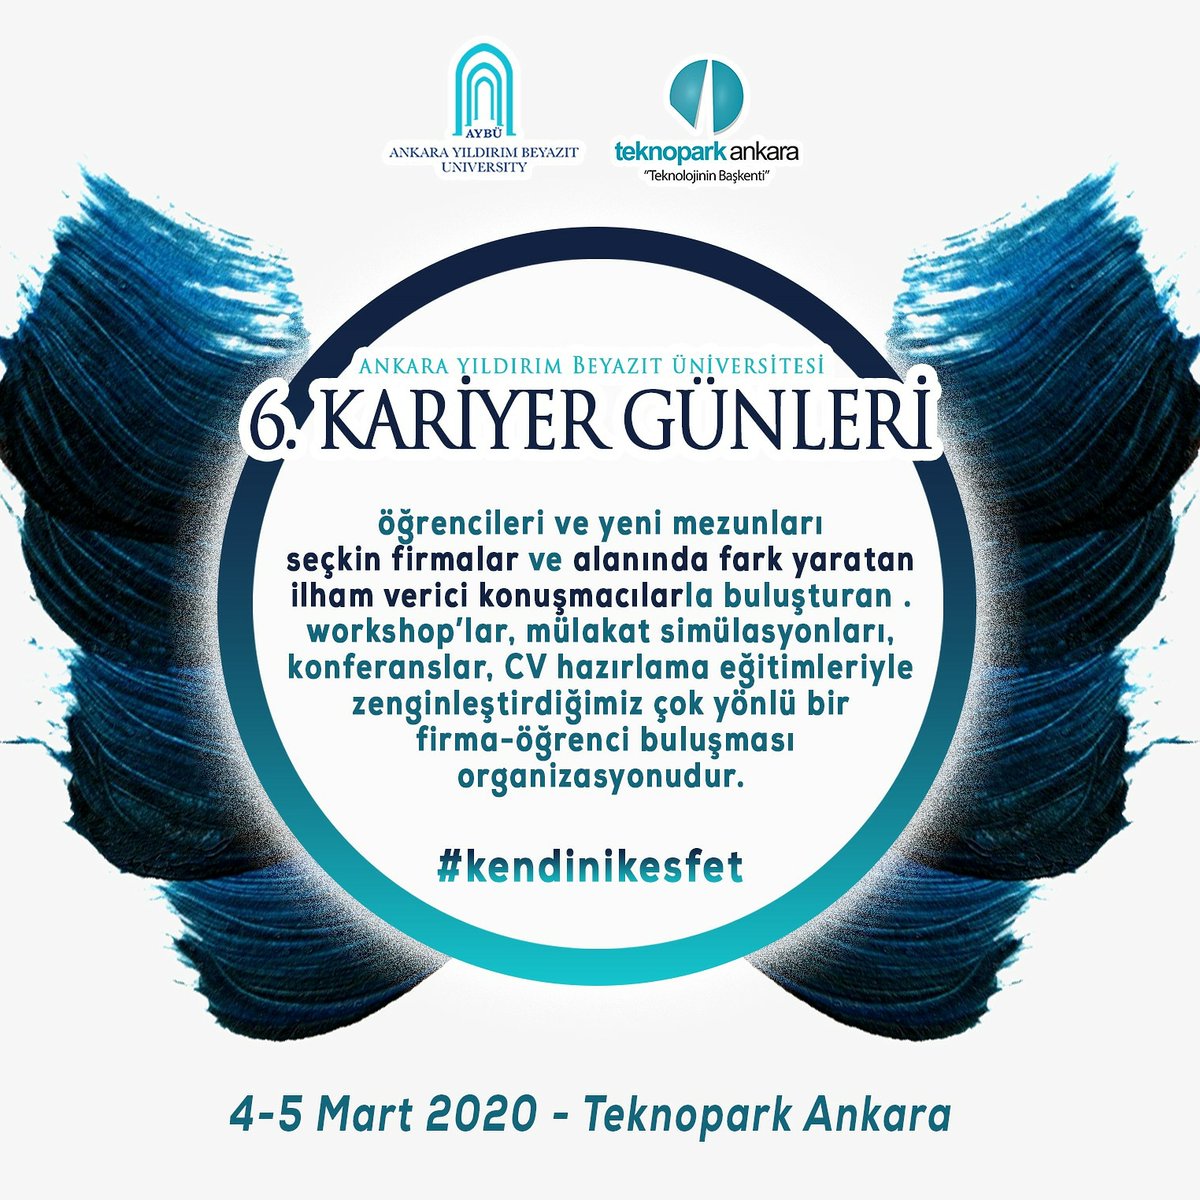 4-5 Mart tarihlerinde Ankara Yıldırım Beyazıt Üniversitesi olarak bu yıl 6.'sını düzenleyeceğimiz ve Kariyer Günleri adını verdiğimiz etkinliğimizle Teknopark'tayız!

#kendinikesfet #üniversitemaybu @TeknoparkAnkara 
 @ybuankara   @profdriaydinli   @mtgundogan